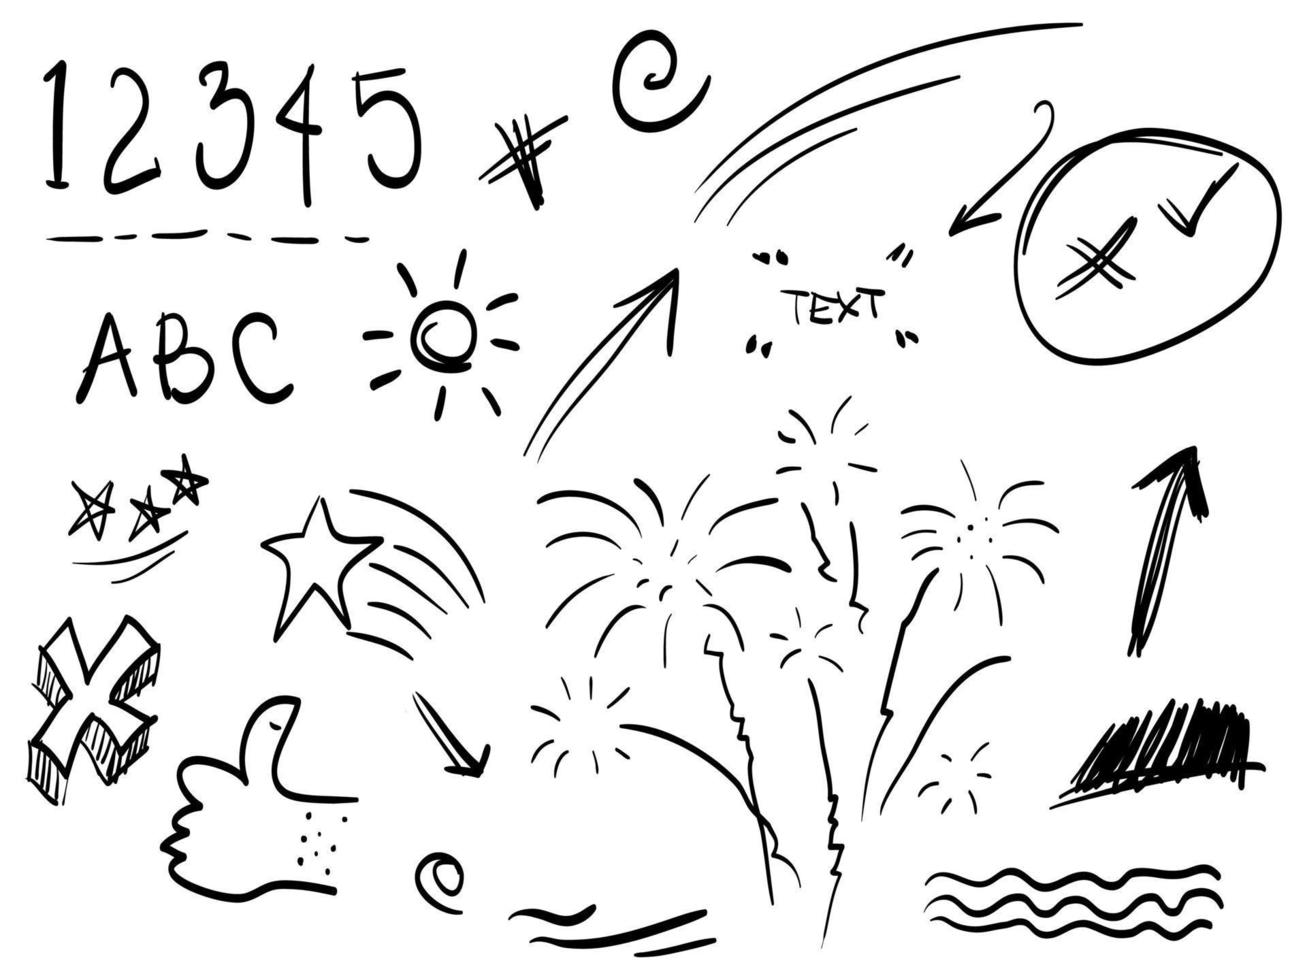 conjunto desenhado à mão de elementos abstratos doodle. com fogos de artifício, número, estrela, redemoinho, swoosh, rabisco, seta, ênfase de texto. isolado no fundo branco. ilustração vetorial vetor